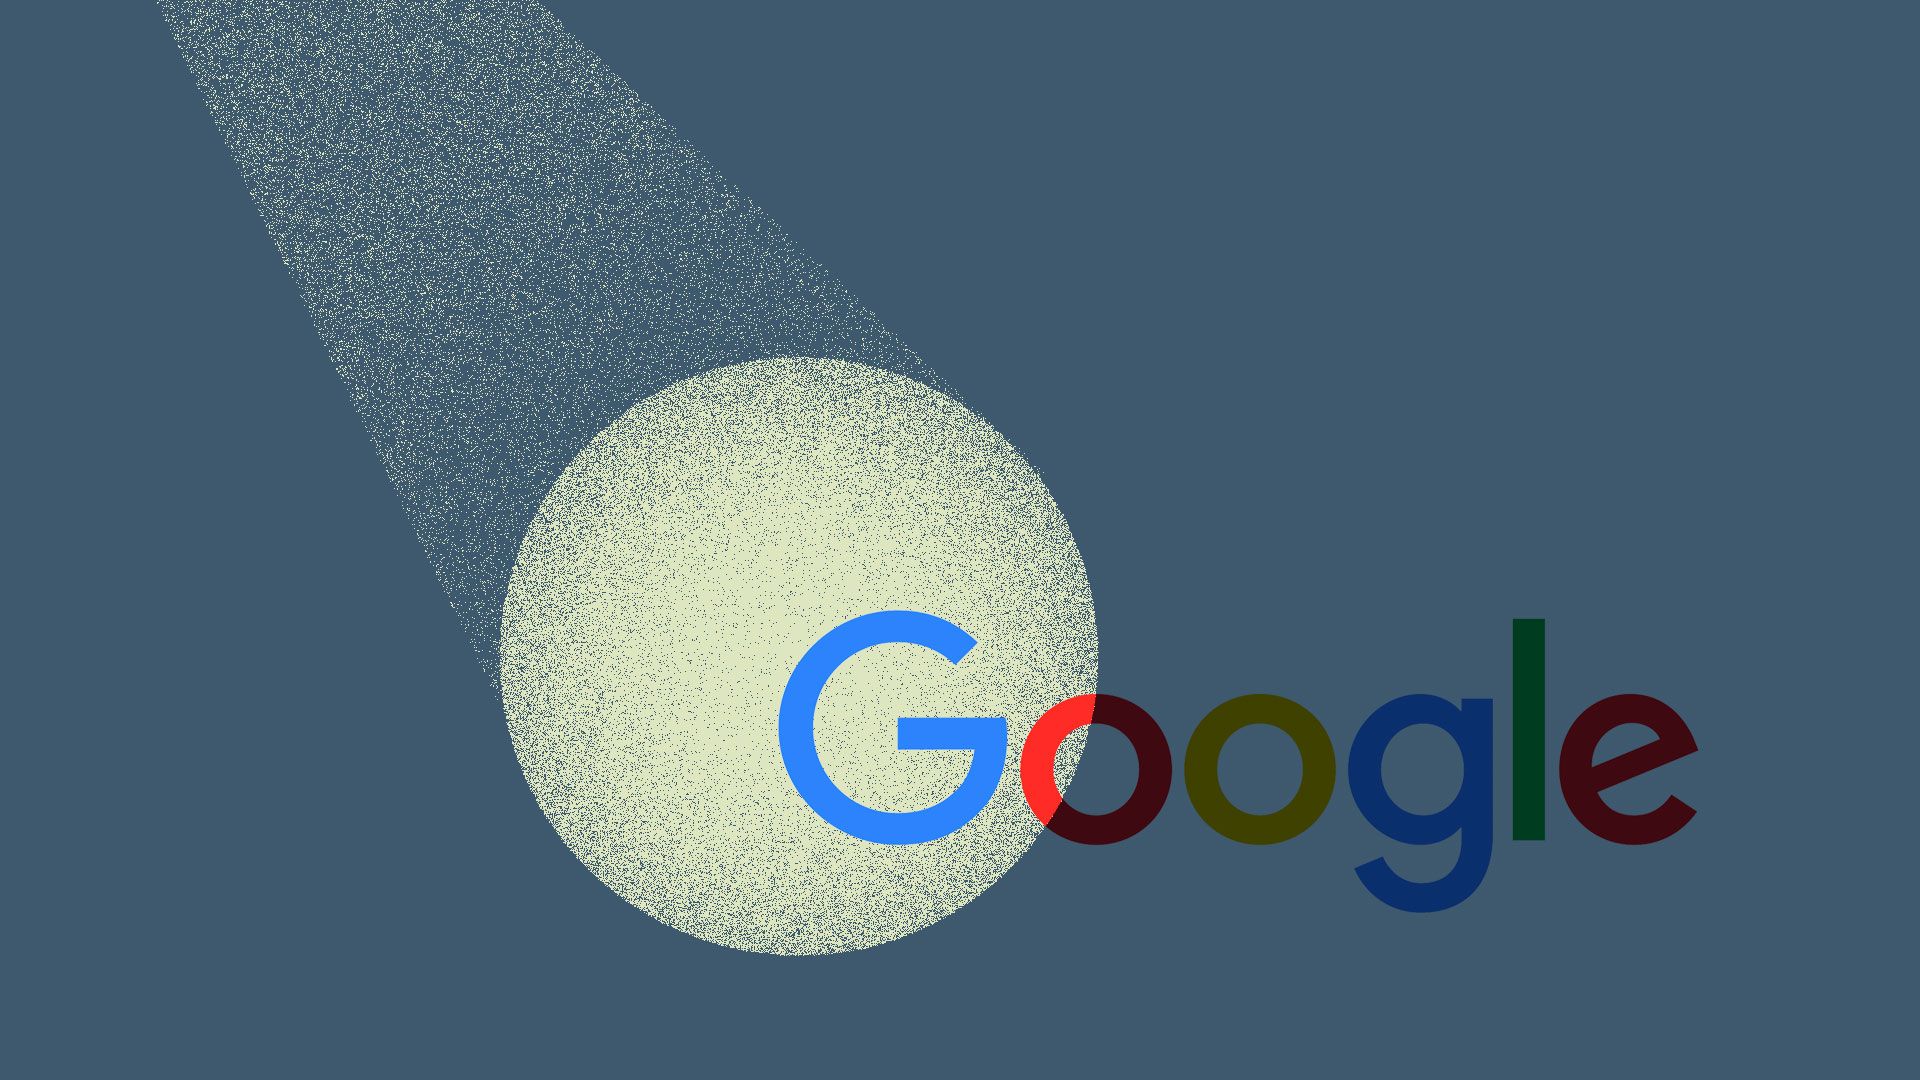 Illustration of a spotlight over Google's logo